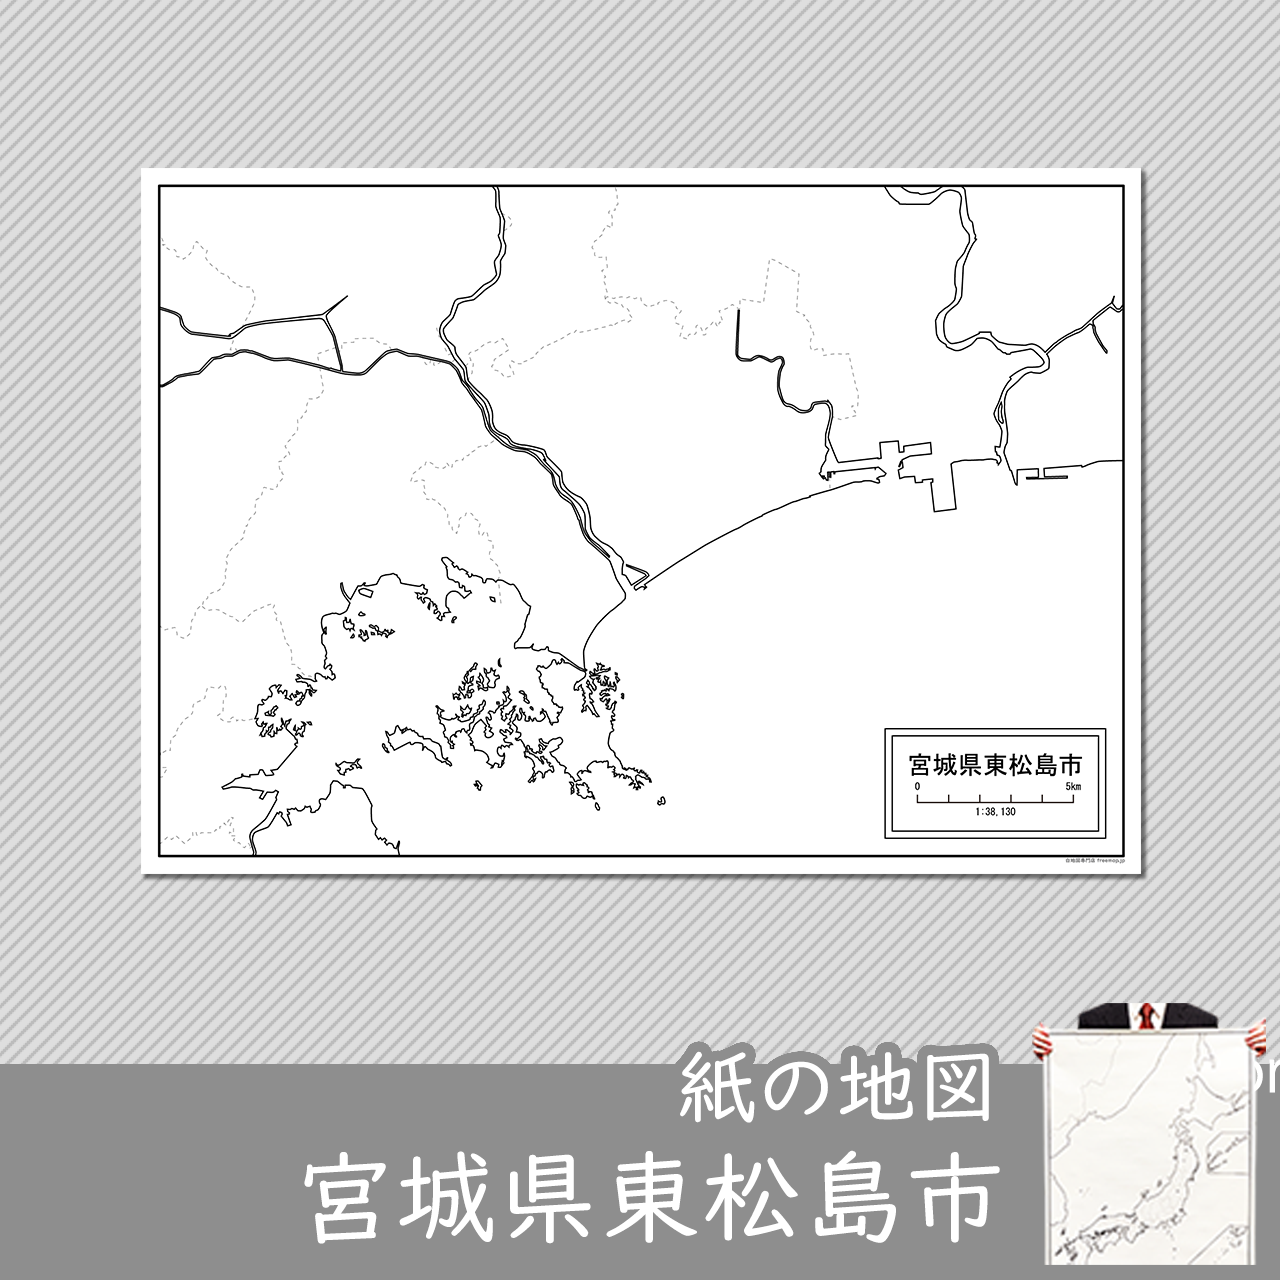 東松島市の紙の白地図のサムネイル